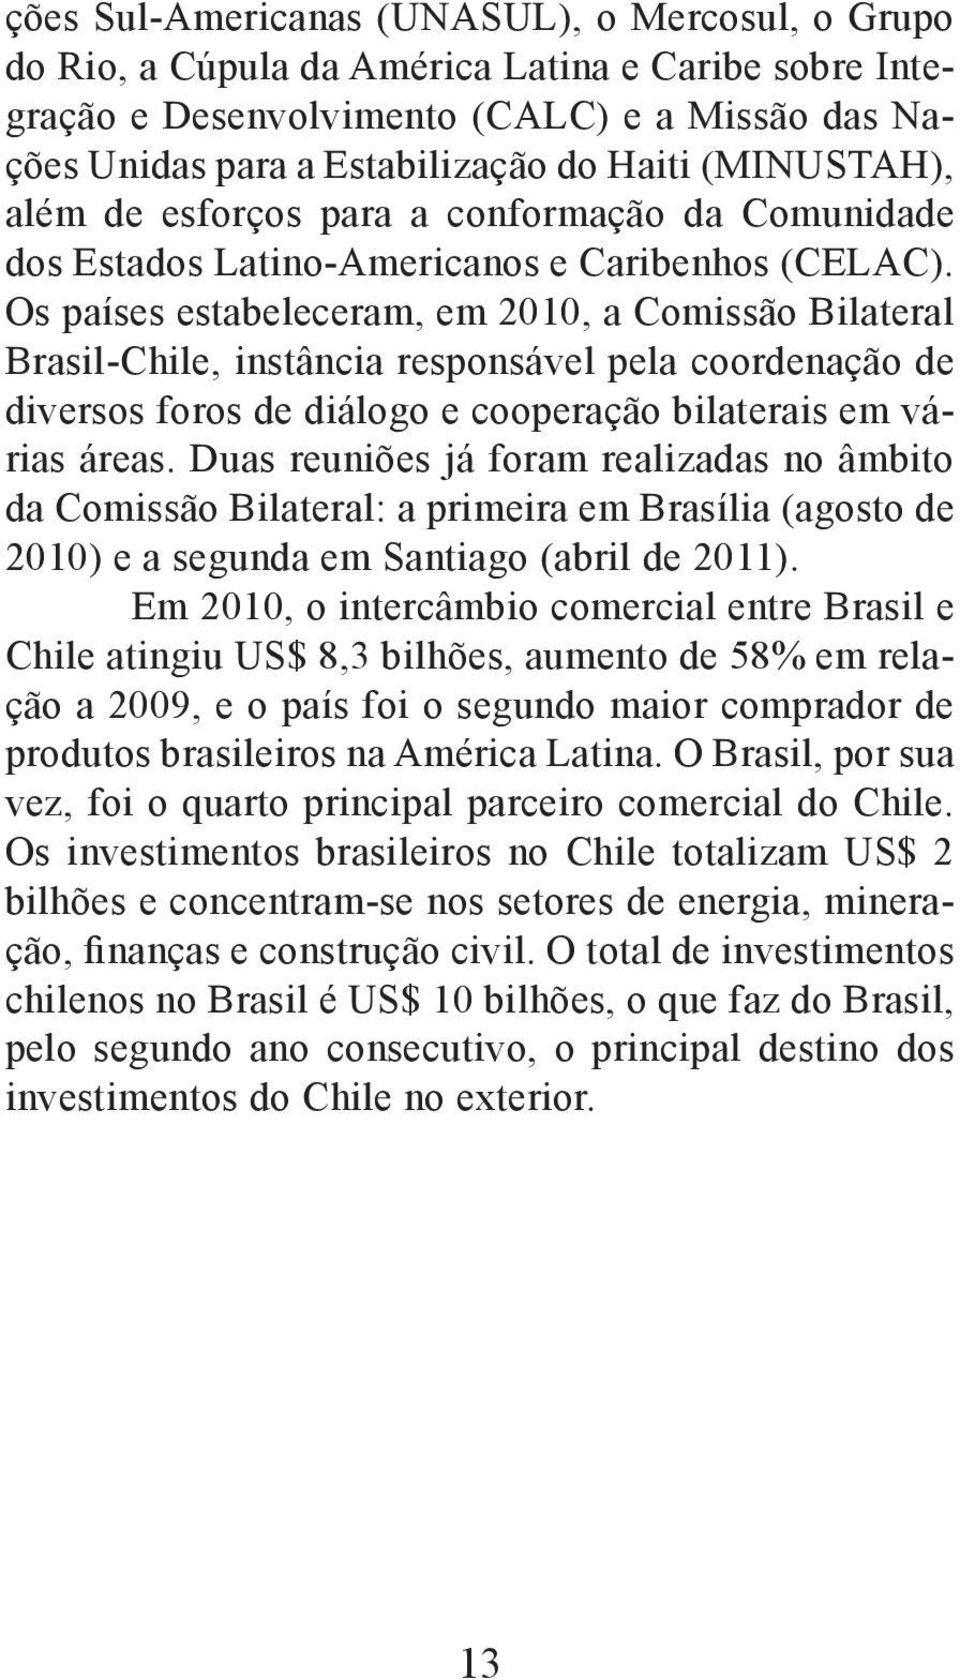 Os países estabeleceram, em 2010, a Comissão Bilateral Brasil-Chile, instância responsável pela coordenação de diversos foros de diálogo e cooperação bilaterais em várias áreas.